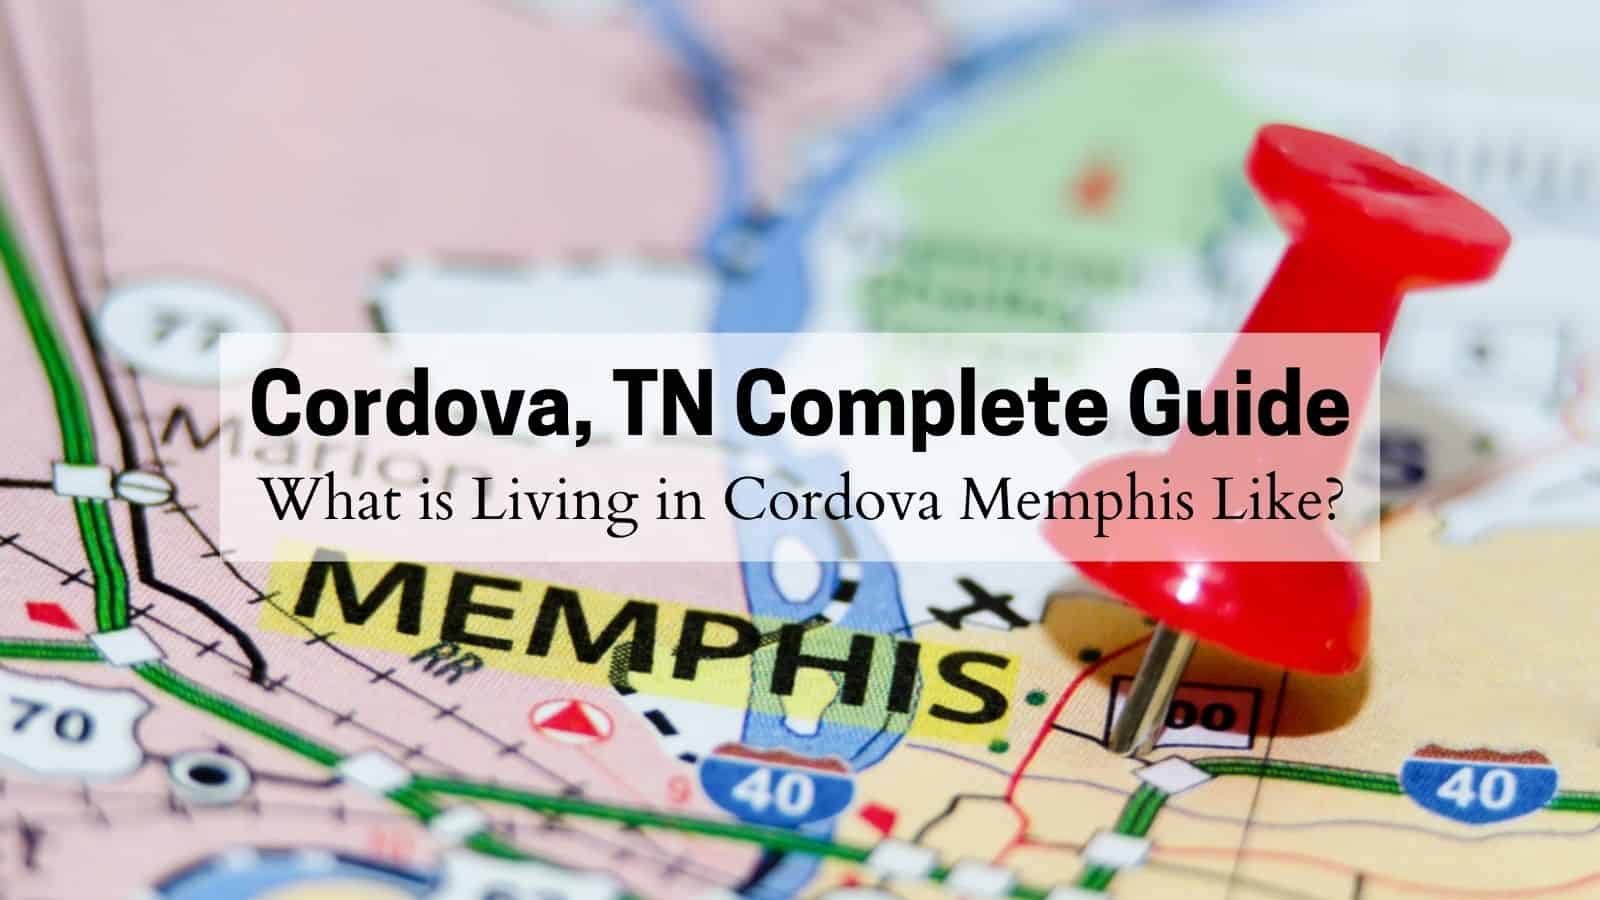 Cordova, TN Complete Guide - What is Living in Cordova Memphis Like?